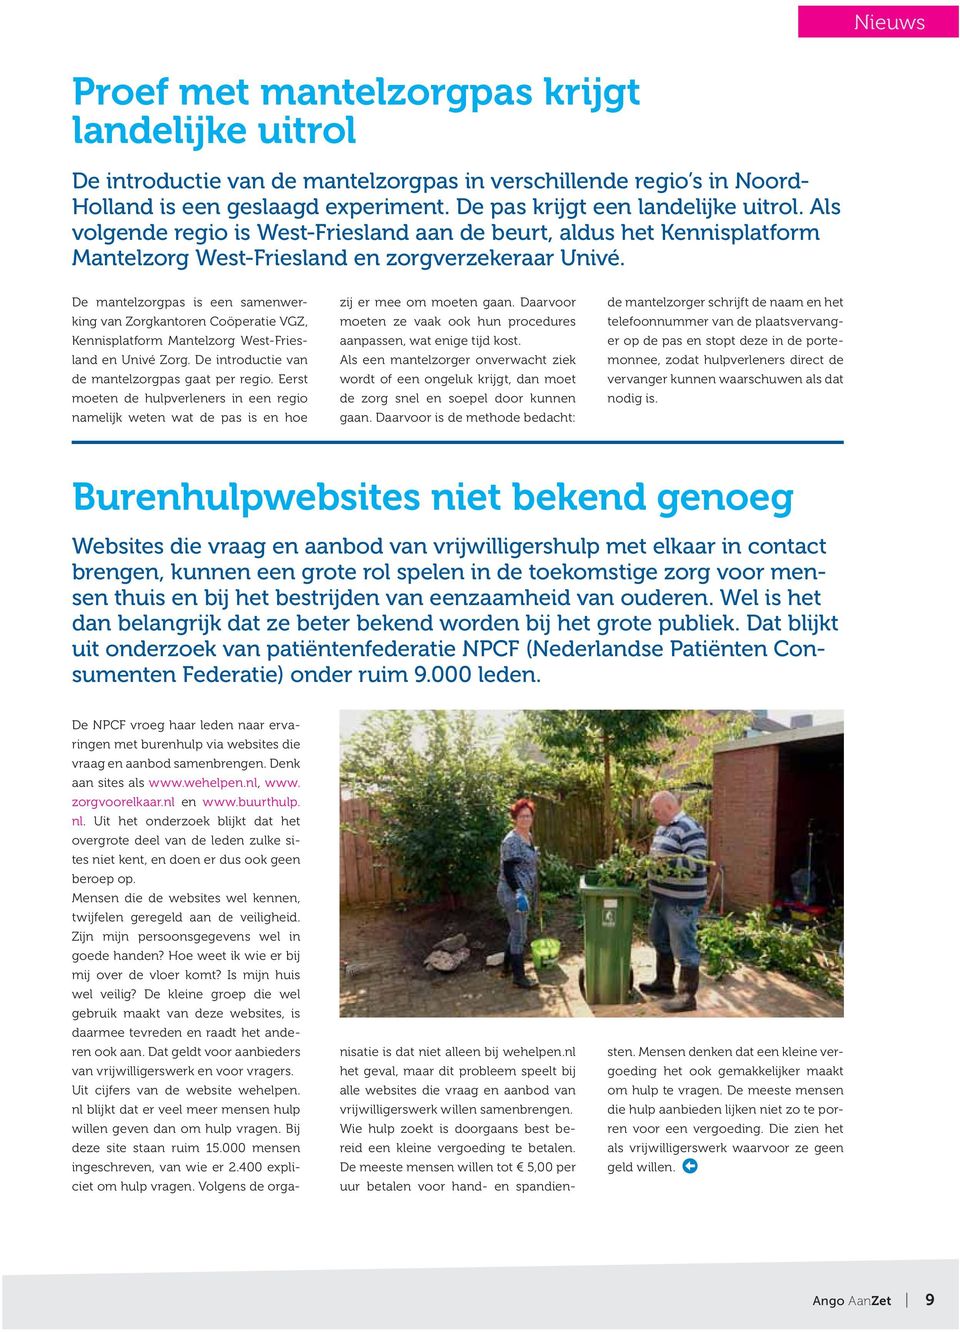 De mantelzorgpas is een samenwerking van Zorgkantoren Coöperatie VGZ, Kennisplatform Mantelzorg West-Friesland en Univé Zorg. De introductie van de mantelzorgpas gaat per regio.